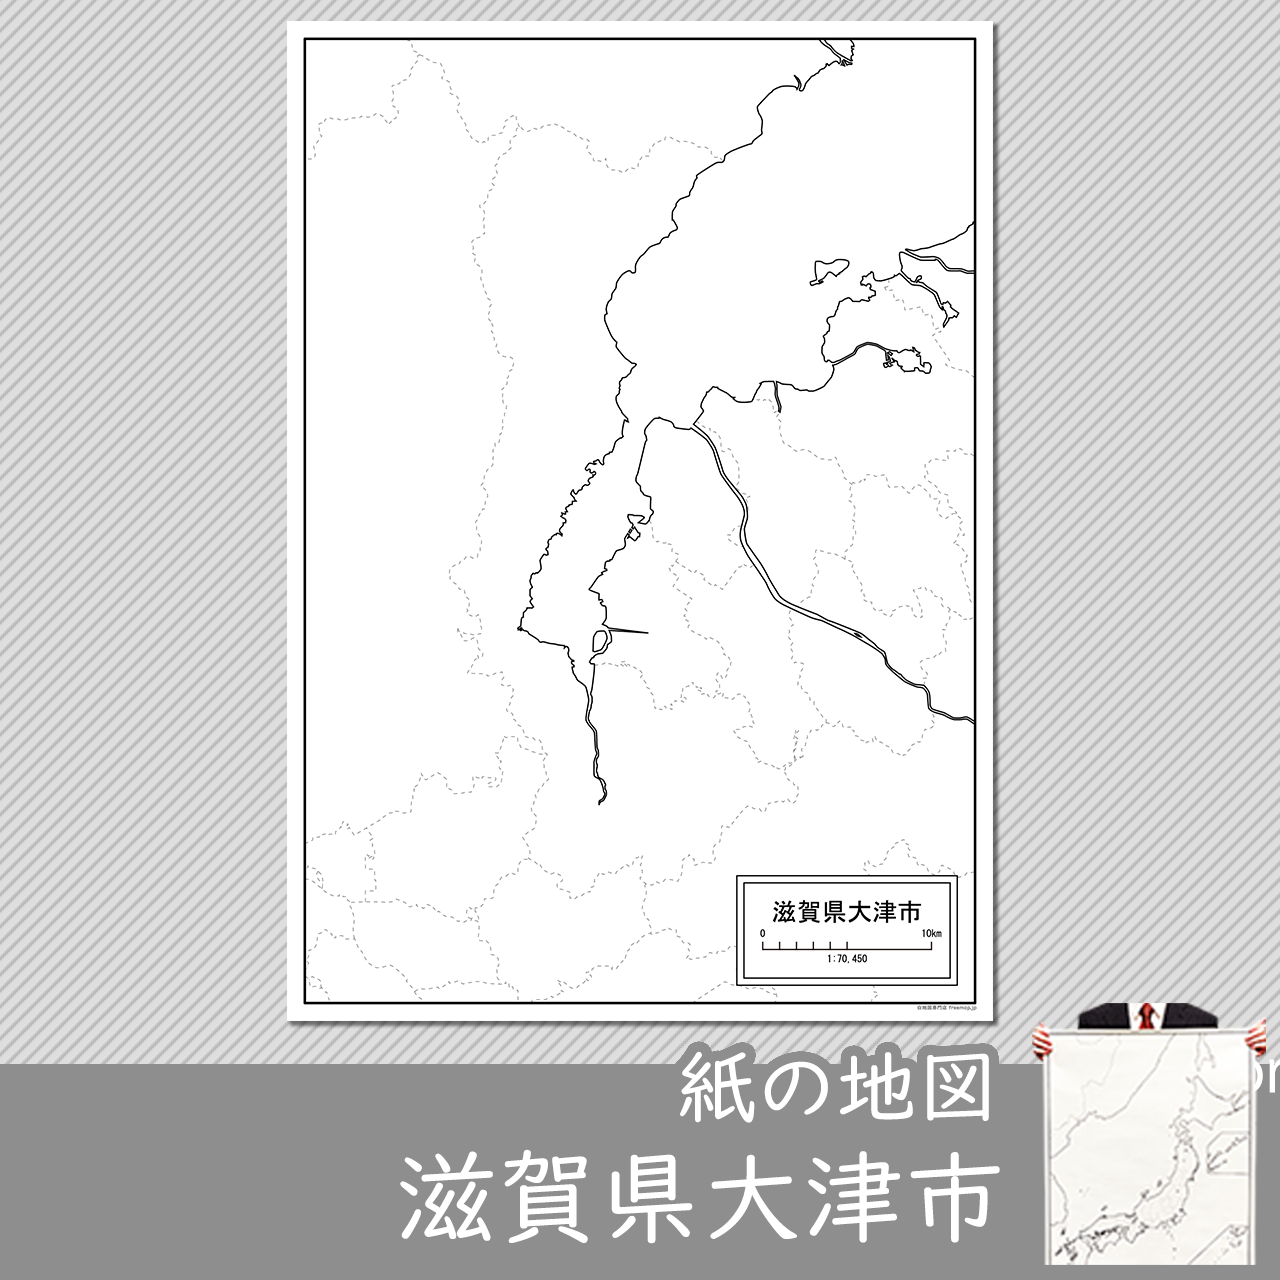 大津市の紙の白地図のサムネイル